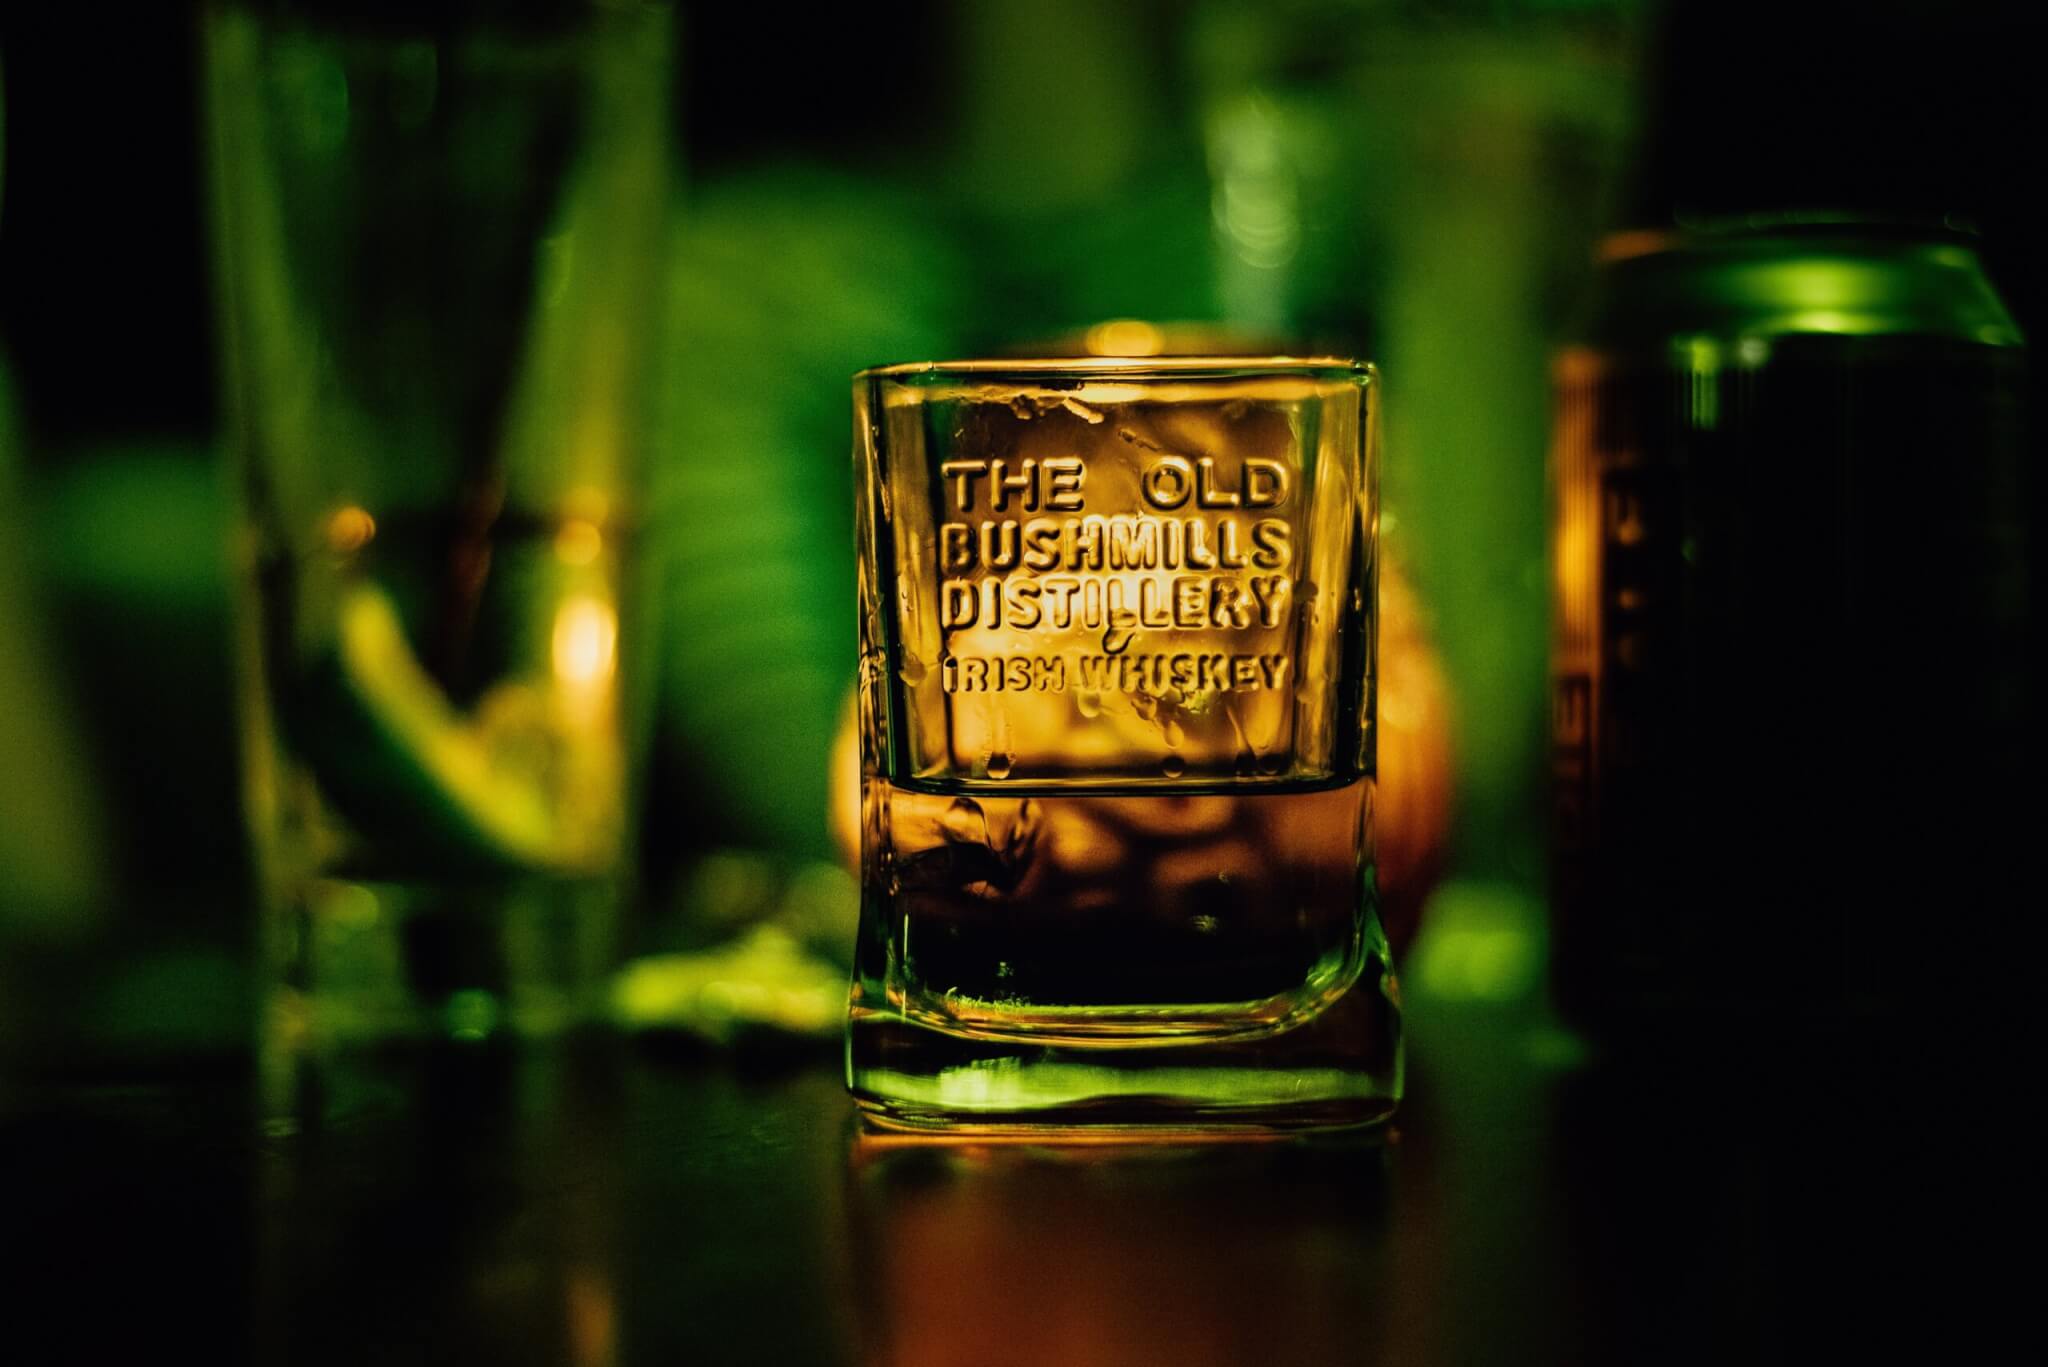 Bushmills Irish Whiskey glass